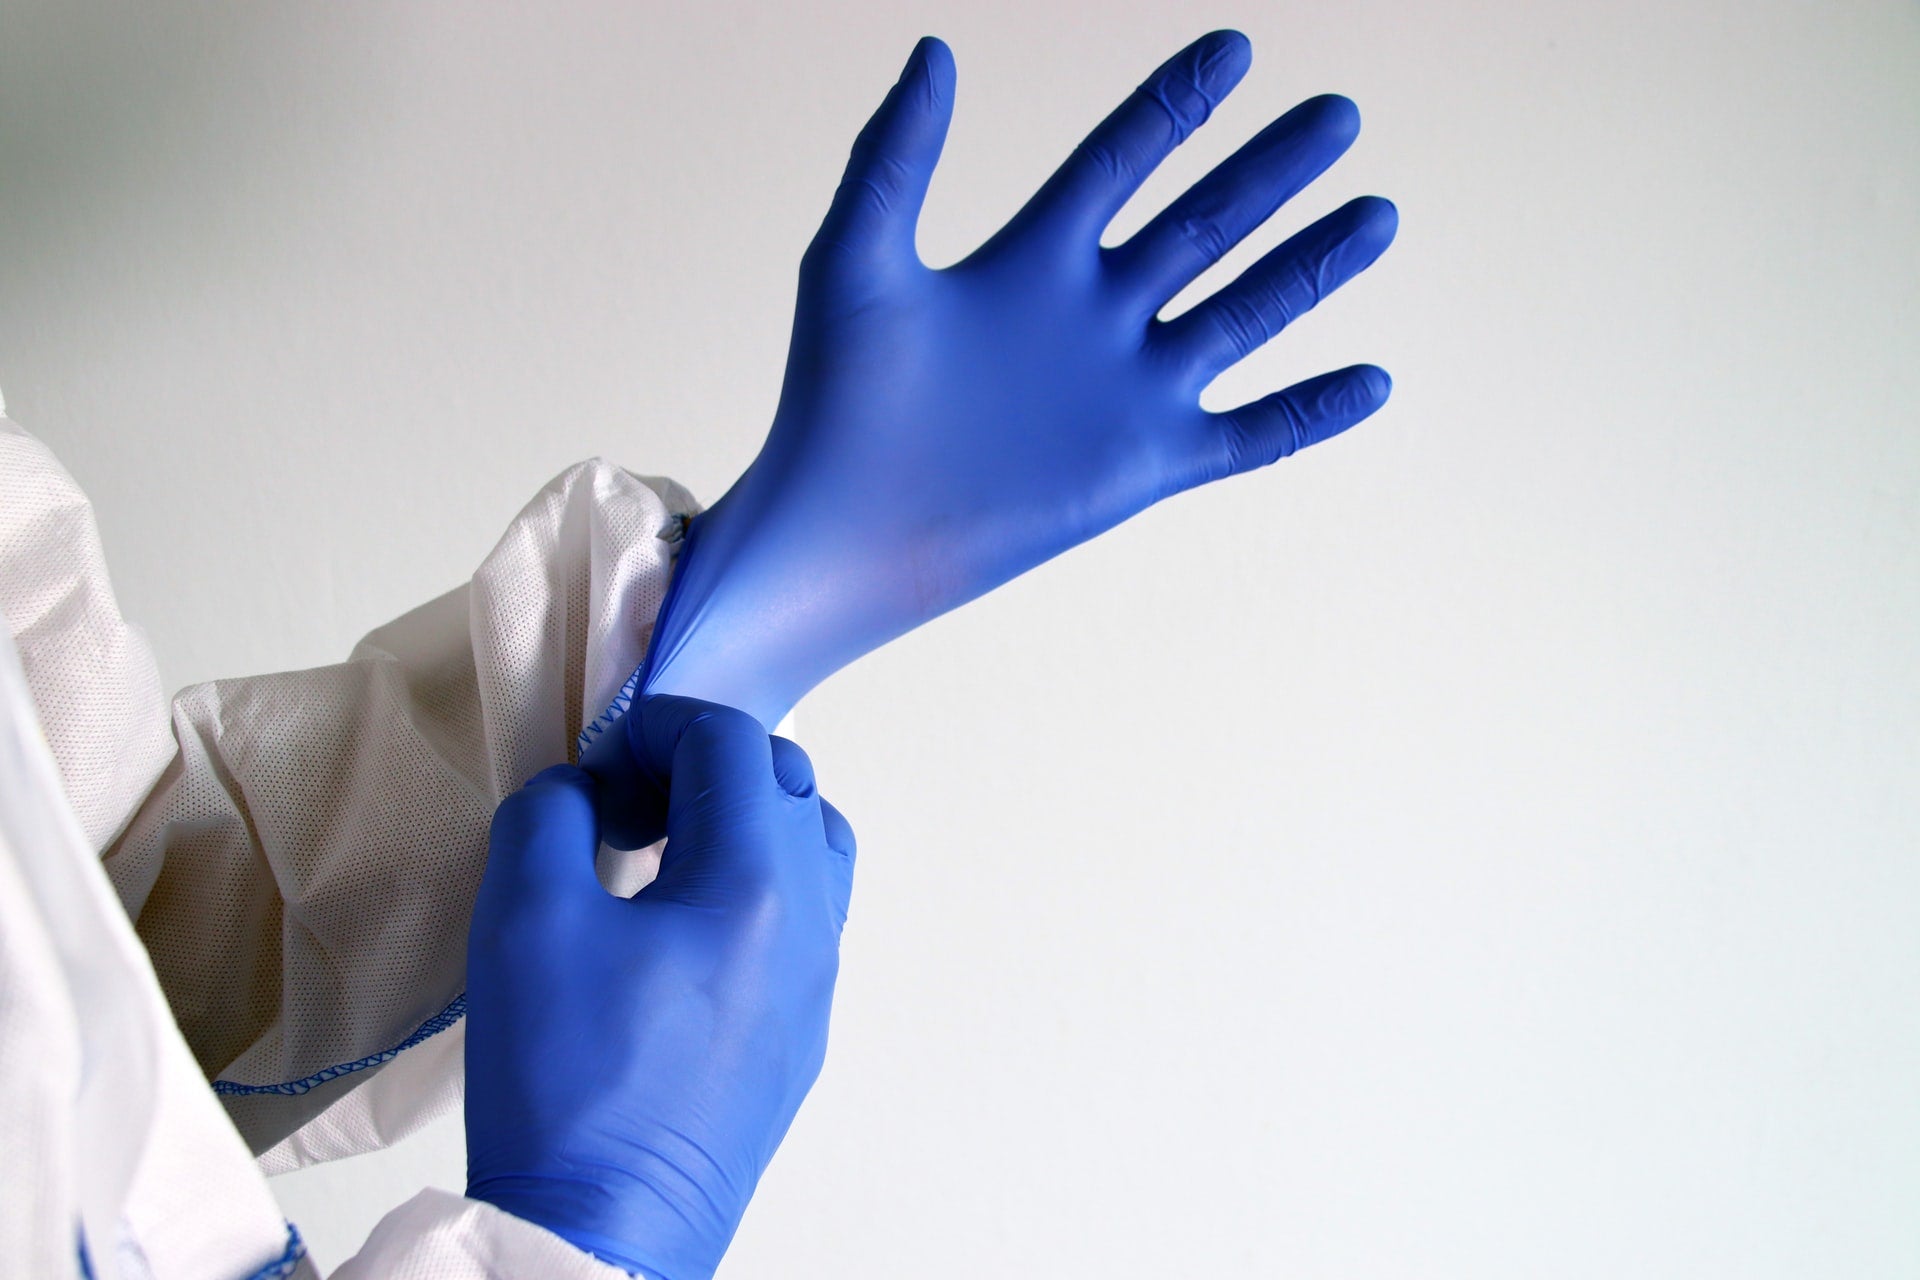 guantes medicos nitrilo latex vinilo gofrados